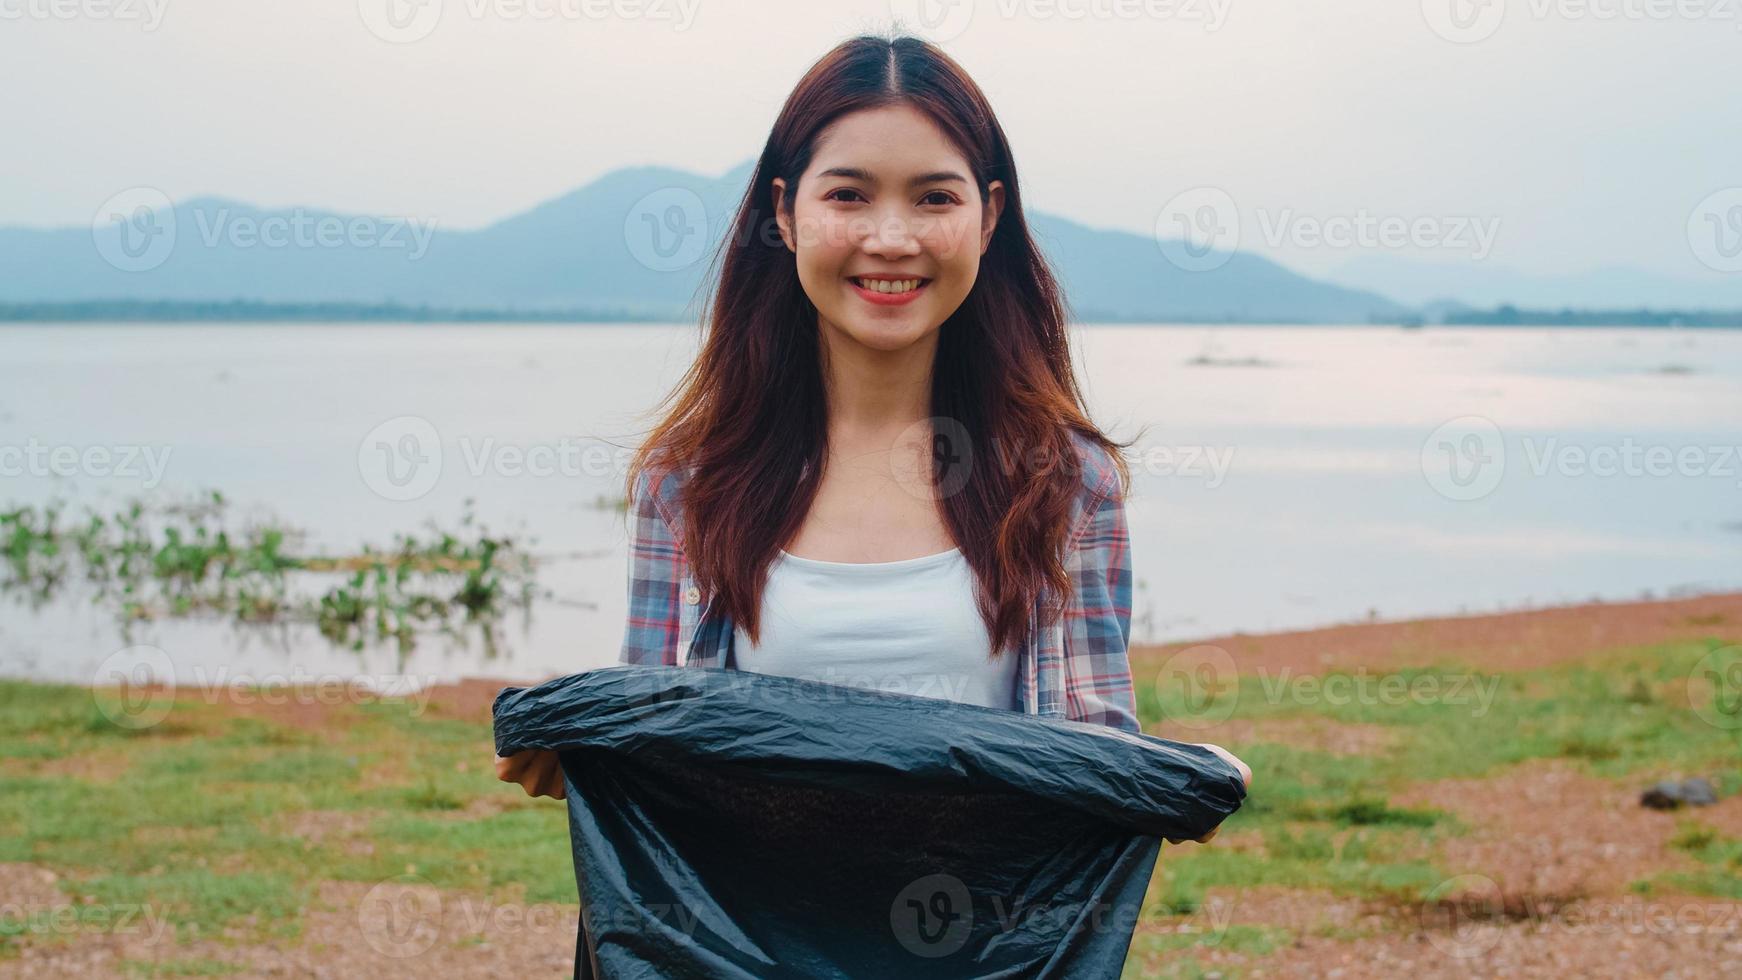 il ritratto di una giovane donna asiatica volontaria aiuta a mantenere la natura pulita guardando la macchina fotografica e sorride con i sacchetti della spazzatura neri sulla spiaggia. concetto sui problemi di inquinamento di conservazione ambientale. foto